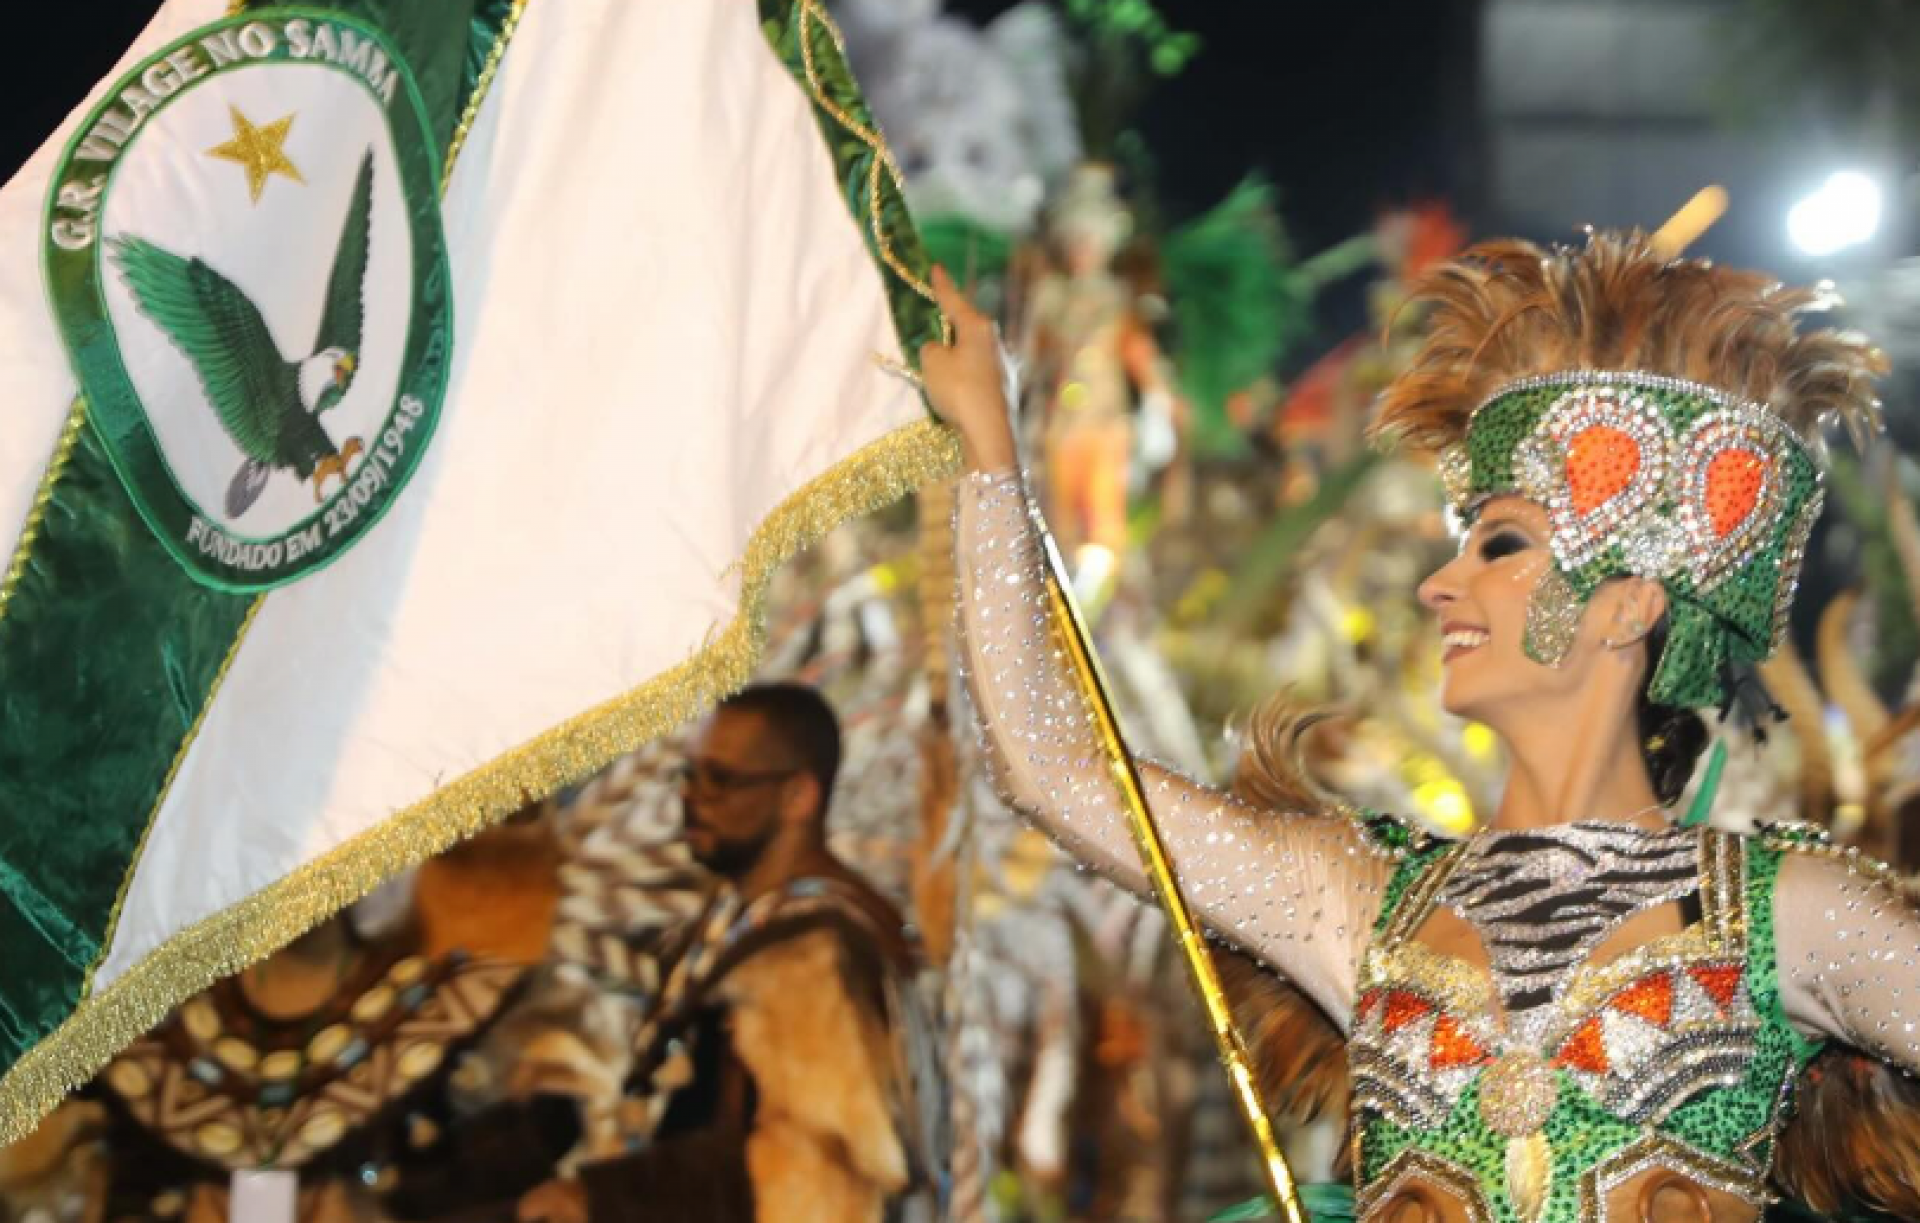 Carnaval de Nova Friburgo é considerado o segundo maior do interior do estado. - Vilage no Samba